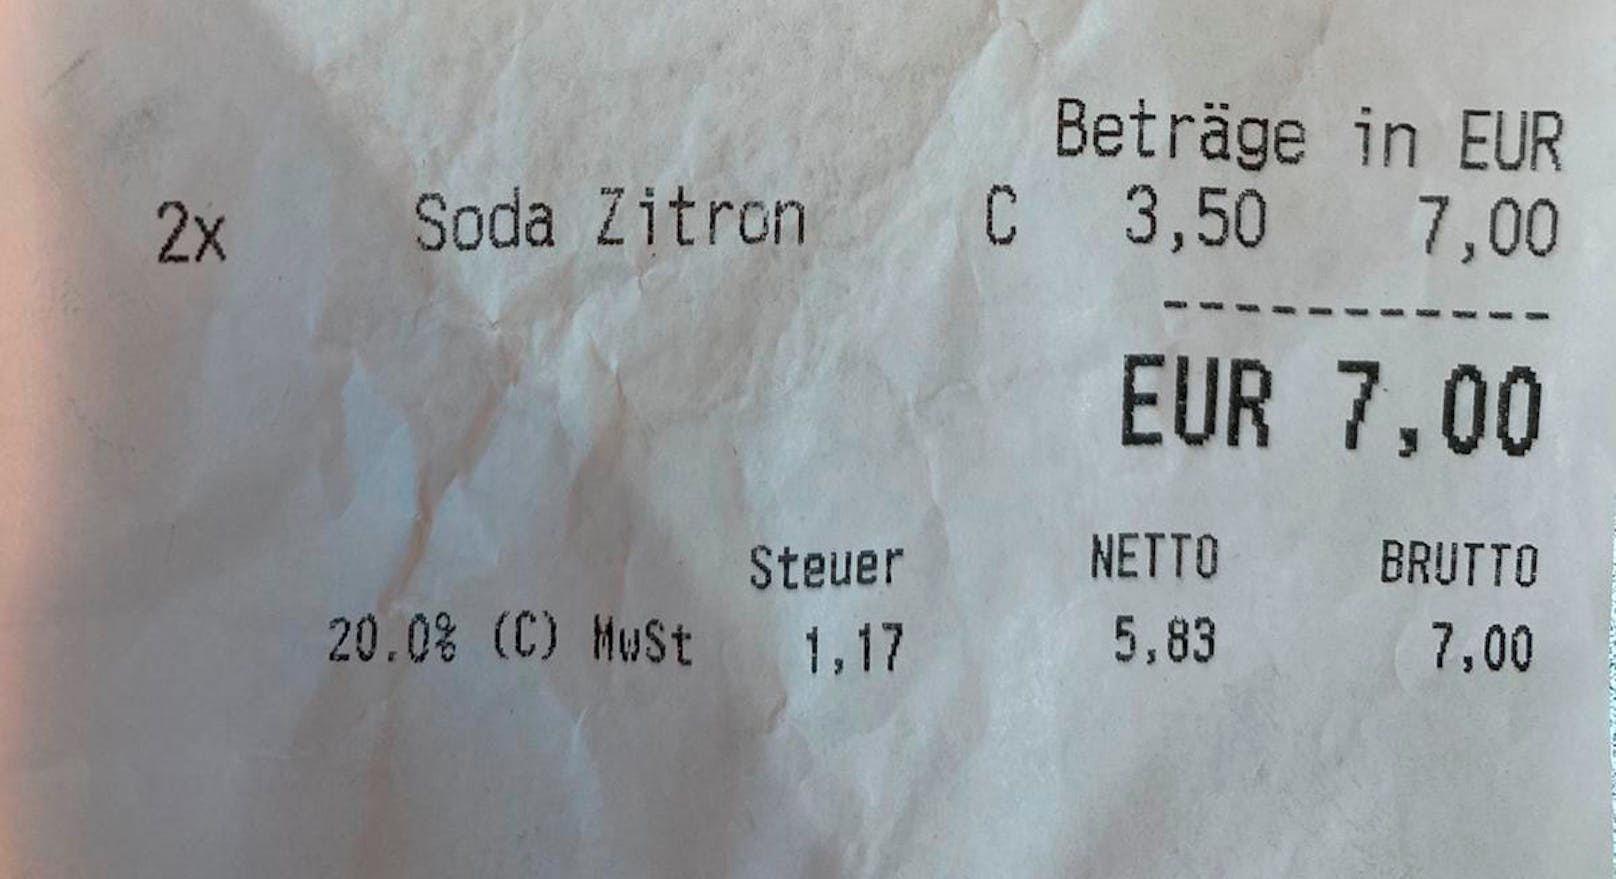 Zwei Personen blechen in Wien 7 Euro, um diesen Sommer gegen die Dehydration anzukämpfen.